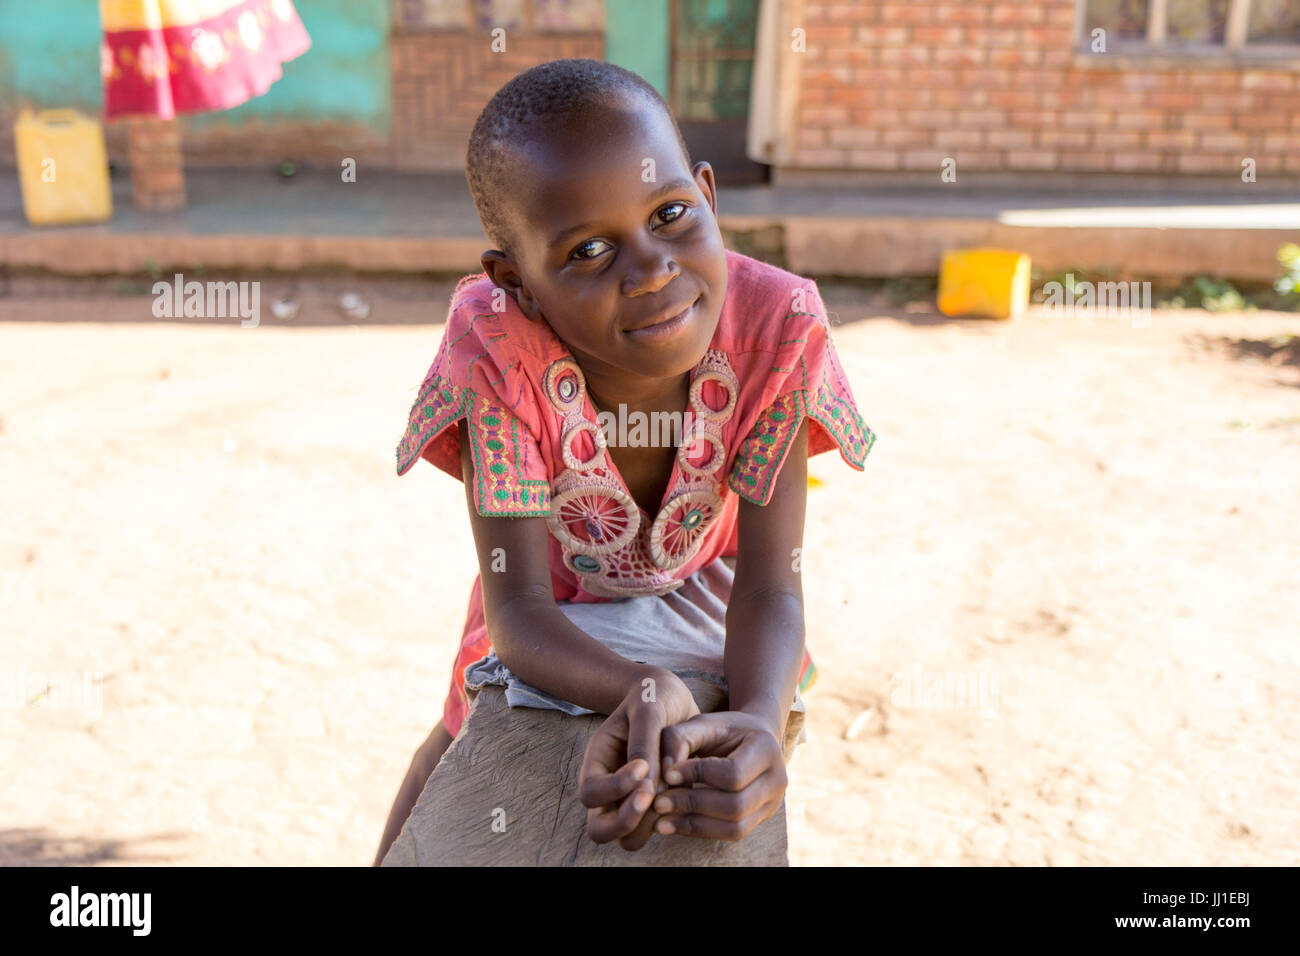 Un enfant de 9 ans smiling ougandaise appuyée sur un banc et regardant la caméra Banque D'Images